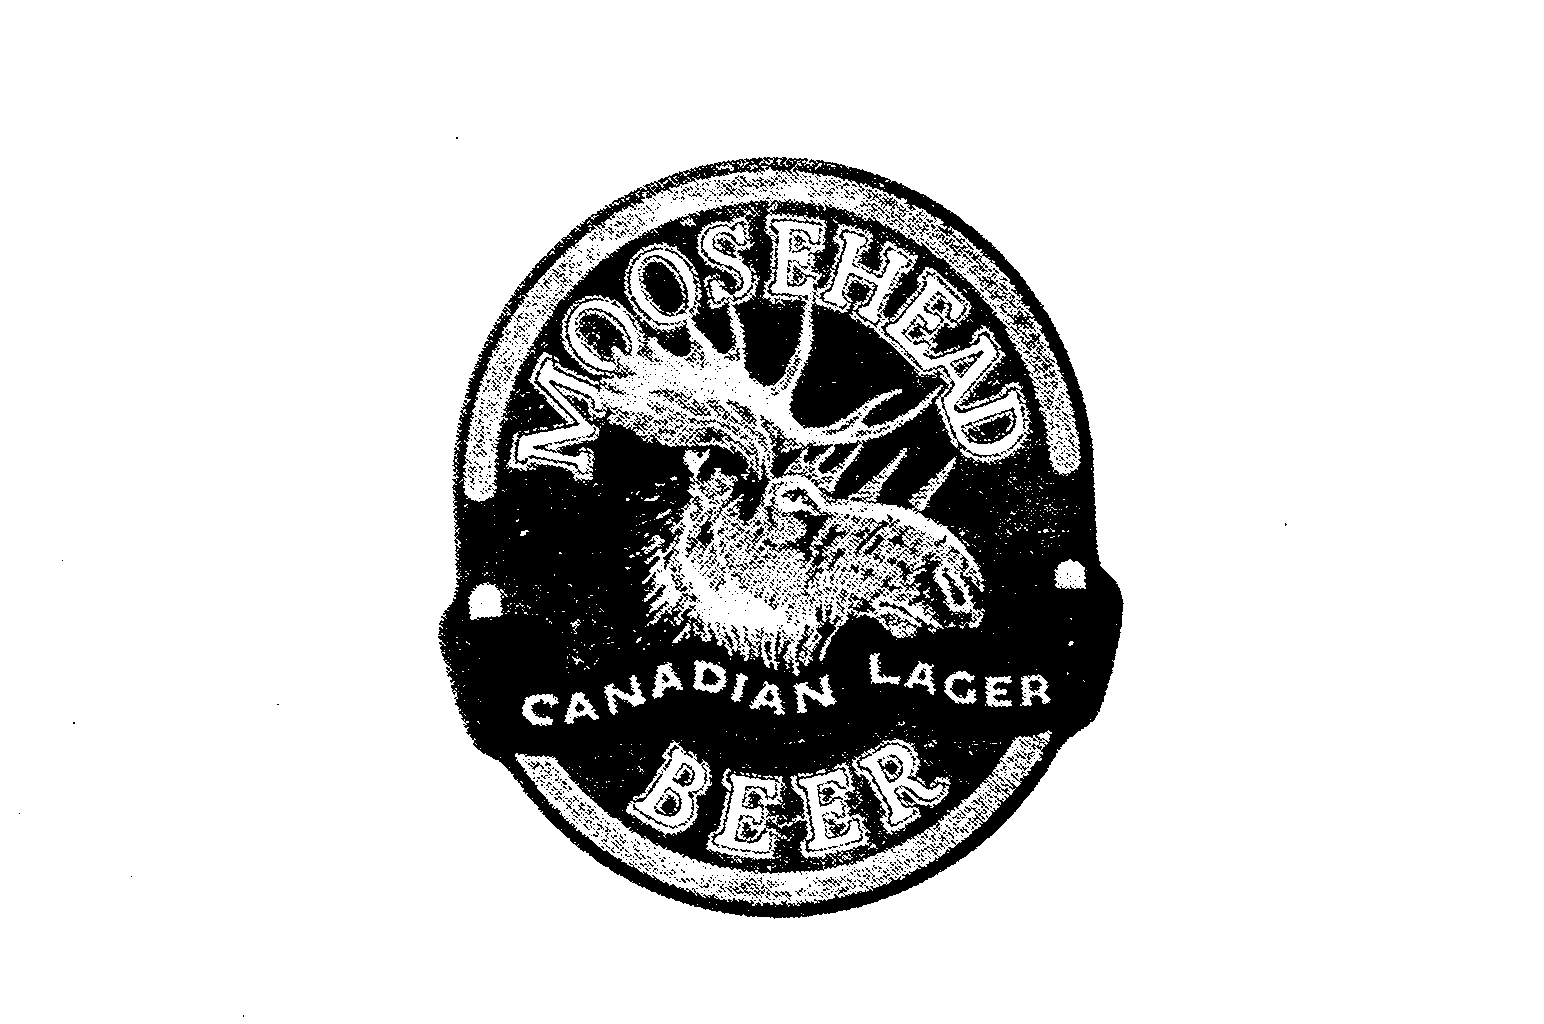  MOOSEHEAD CANADIAN LAGER BEER